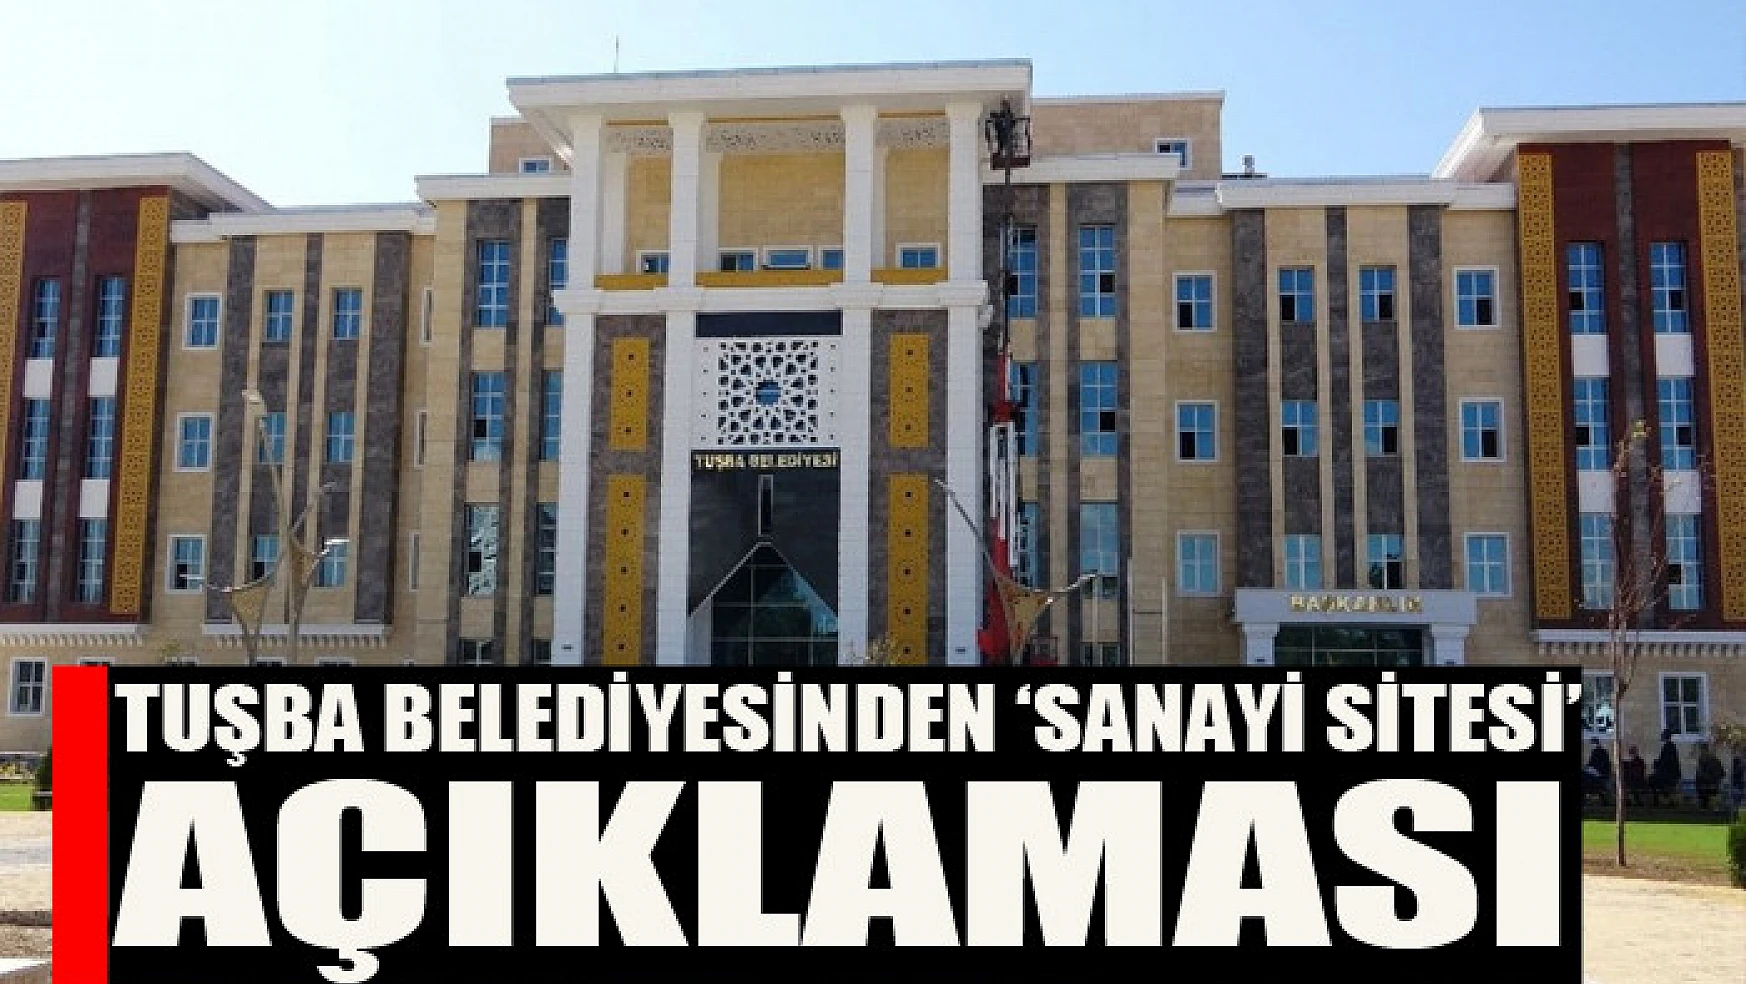 Tuşba Belediyesinden 'sanayi sitesi' açıklaması